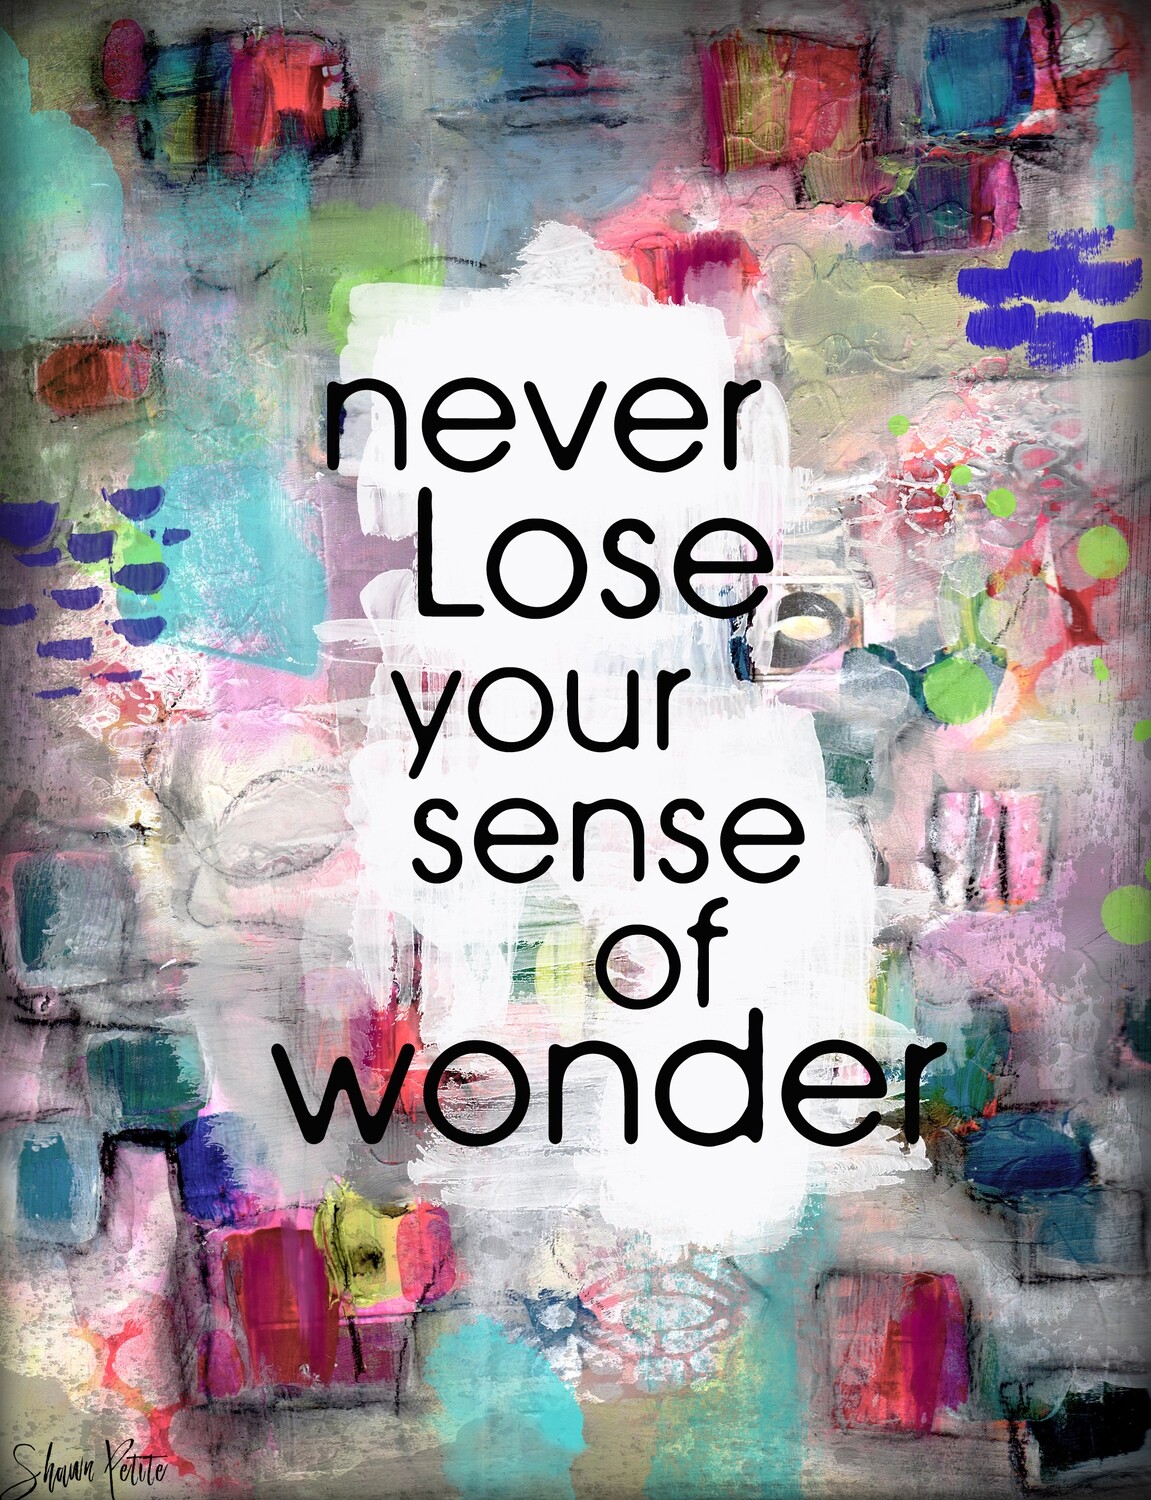 "Never lose your sense of wonder" digital instant download